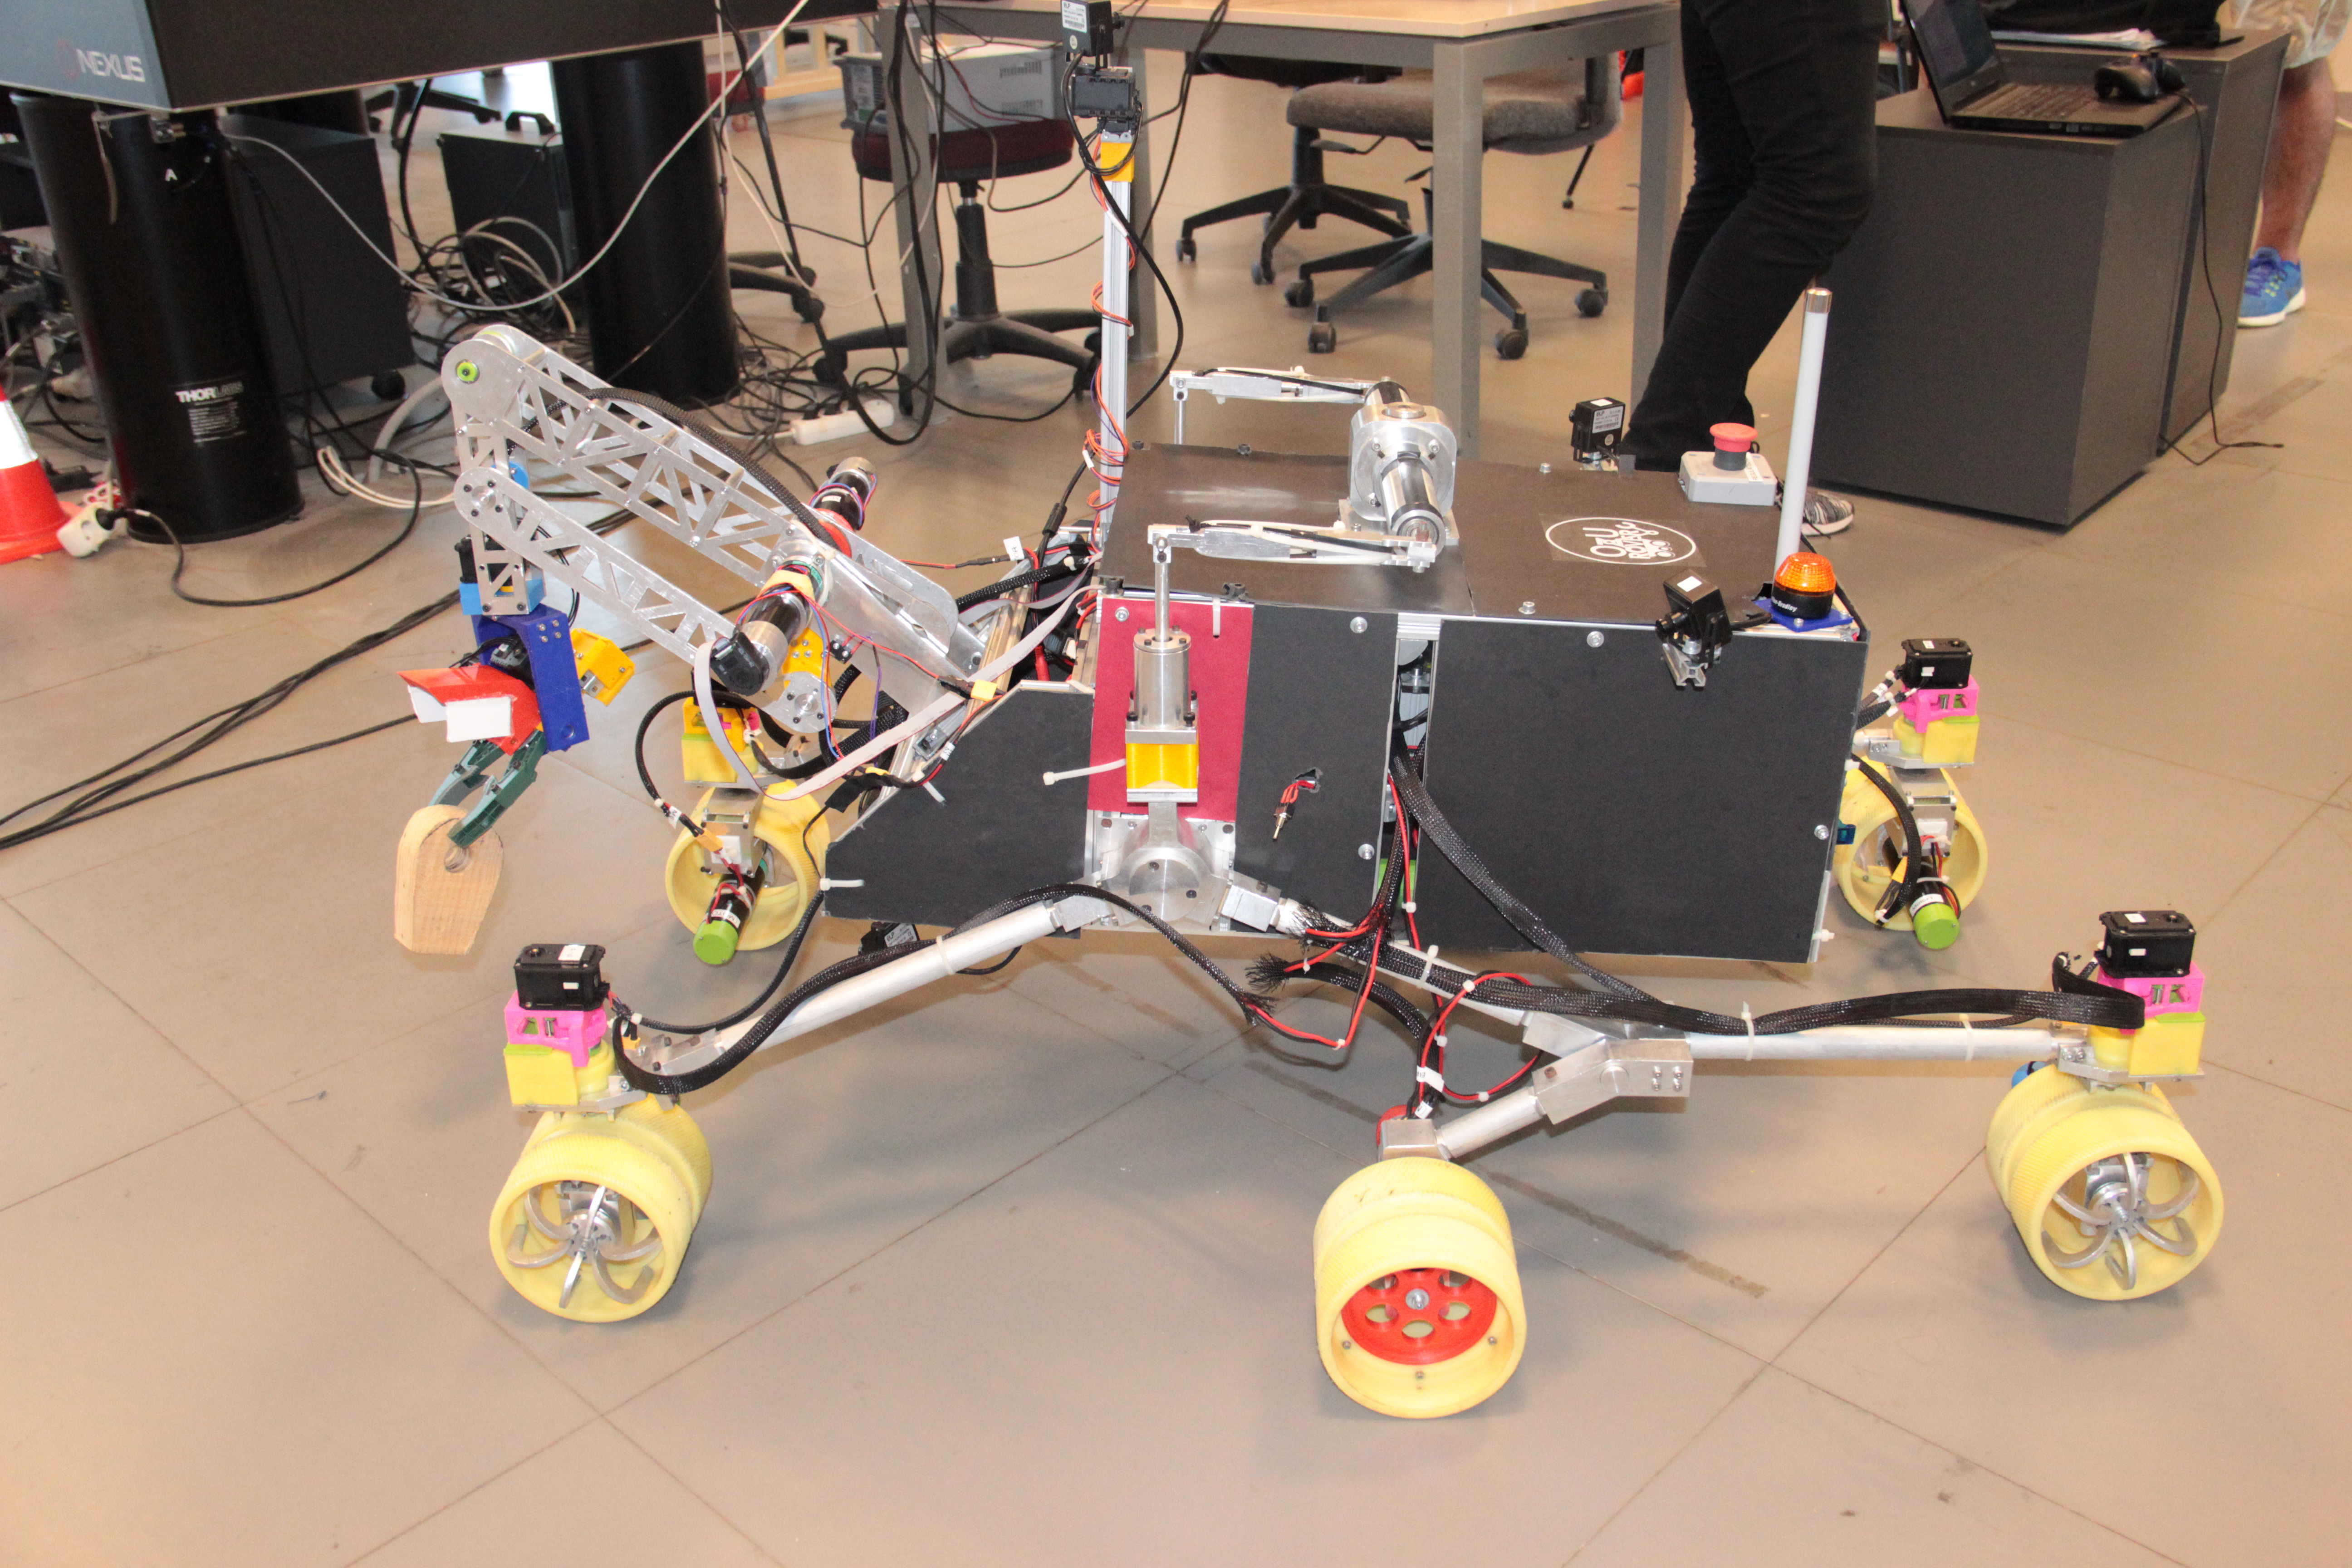 Özyeğin Üniversitesi öğrencilerinin tasarladığı mars robotu ikinci kez Türkiye’den katılan tek takım olarak Polonya’da yarışacak-1142